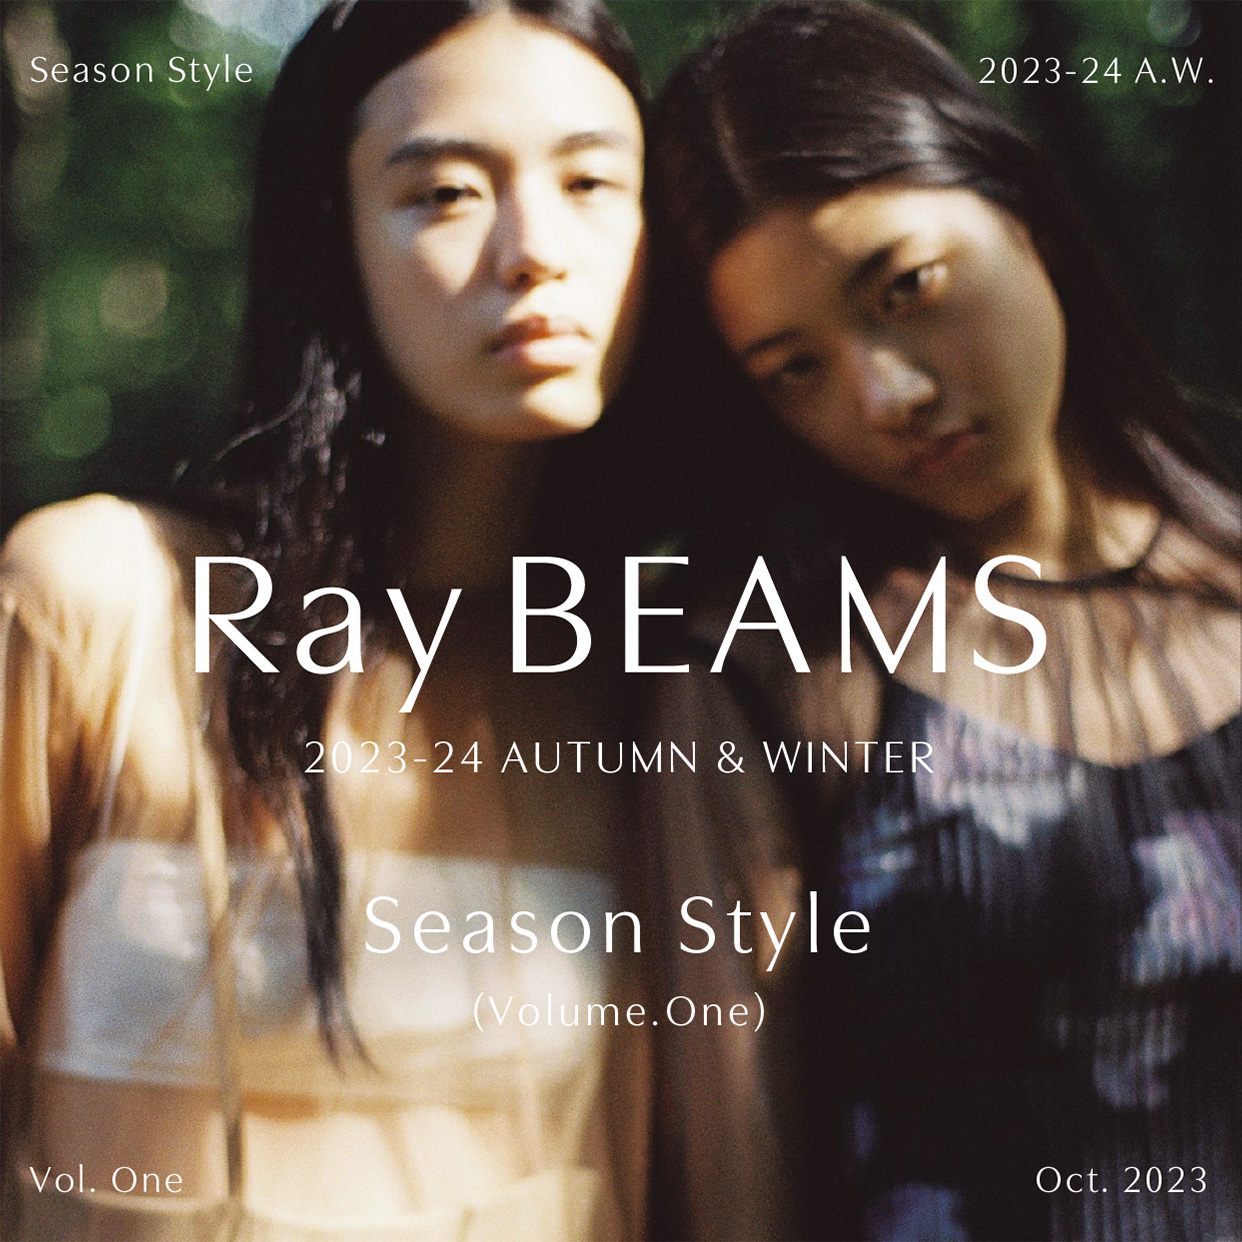 時尚總是賦予我們心動的瞬間｜Ray BEAMS 2023-24 AUTUMN & WINTER Season Style vol.1